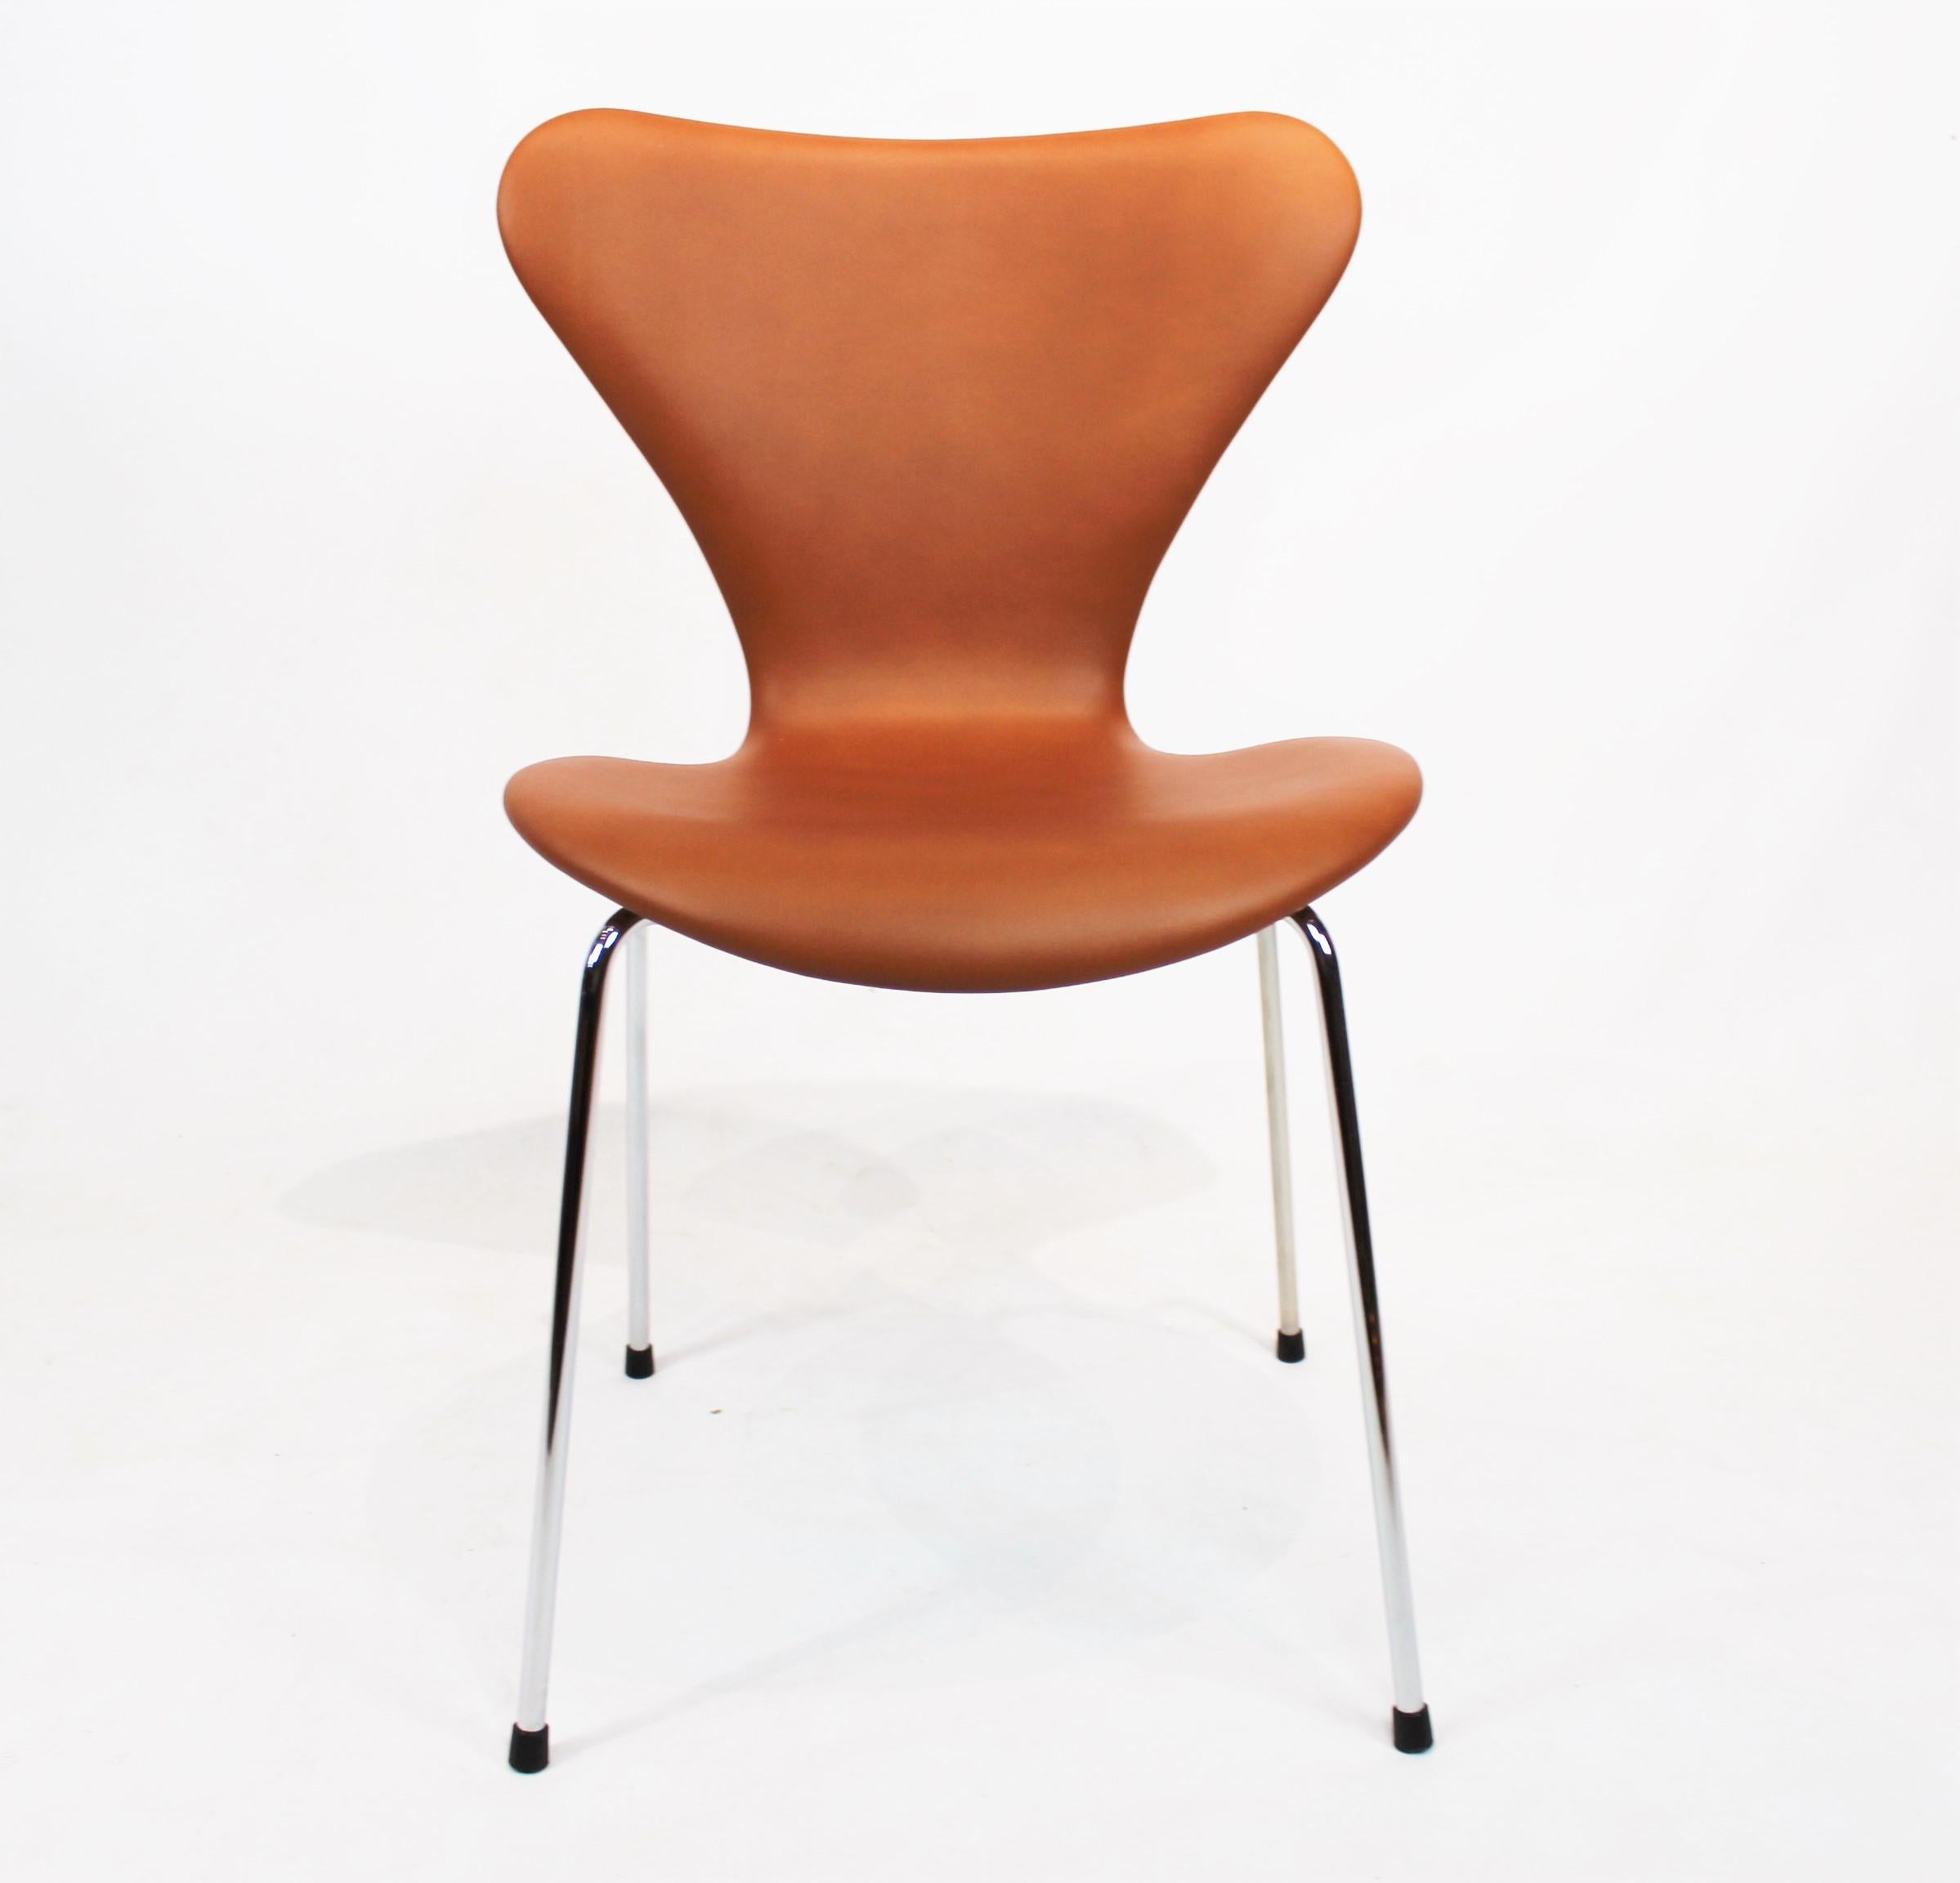 Exquisiter Satz von vier Stühlen der Serie Seven, Modell 3107, umhüllt von luxuriösem Cognac-Leder, ein Zeugnis für Arne Jacobsens visionäres Design.

Diese Stühle, eine klassische Manifestation von Arne Jacobsens ikonischem Design der Serie Seven,